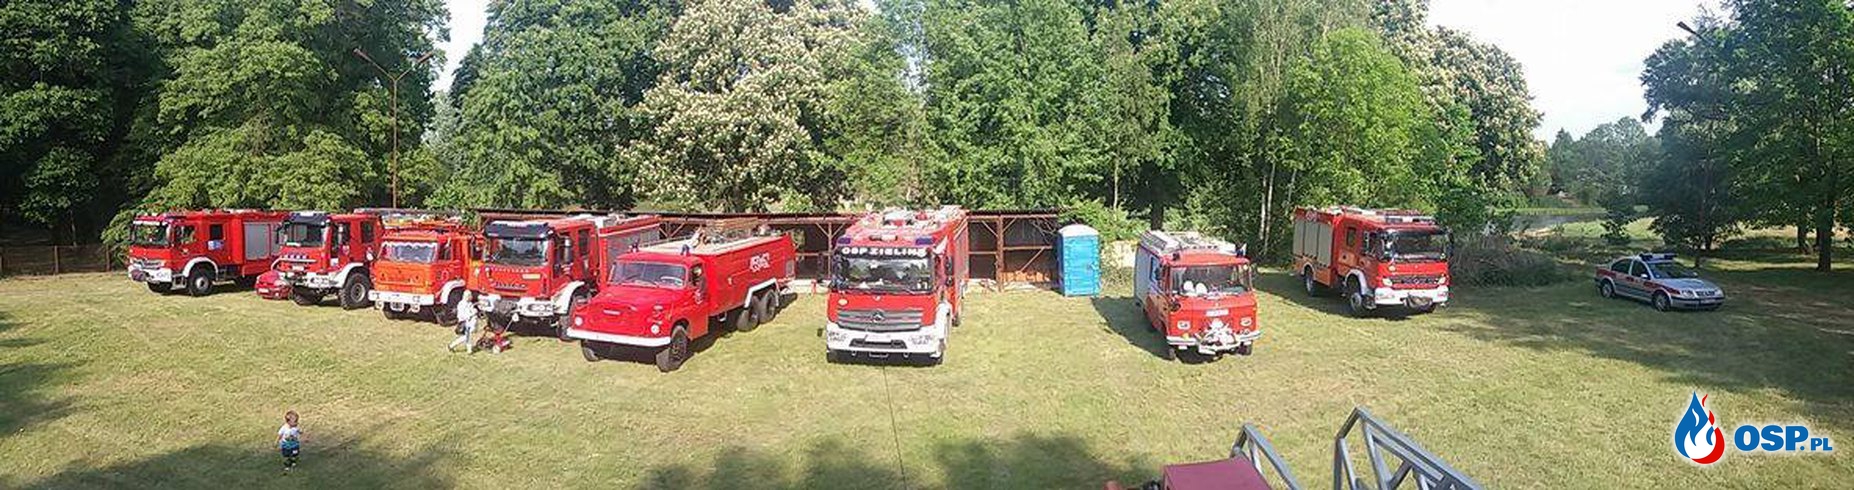 Powiatowy Dzień Strażaka oraz  obchody 70-lecia OSP Mieszkowice OSP Ochotnicza Straż Pożarna